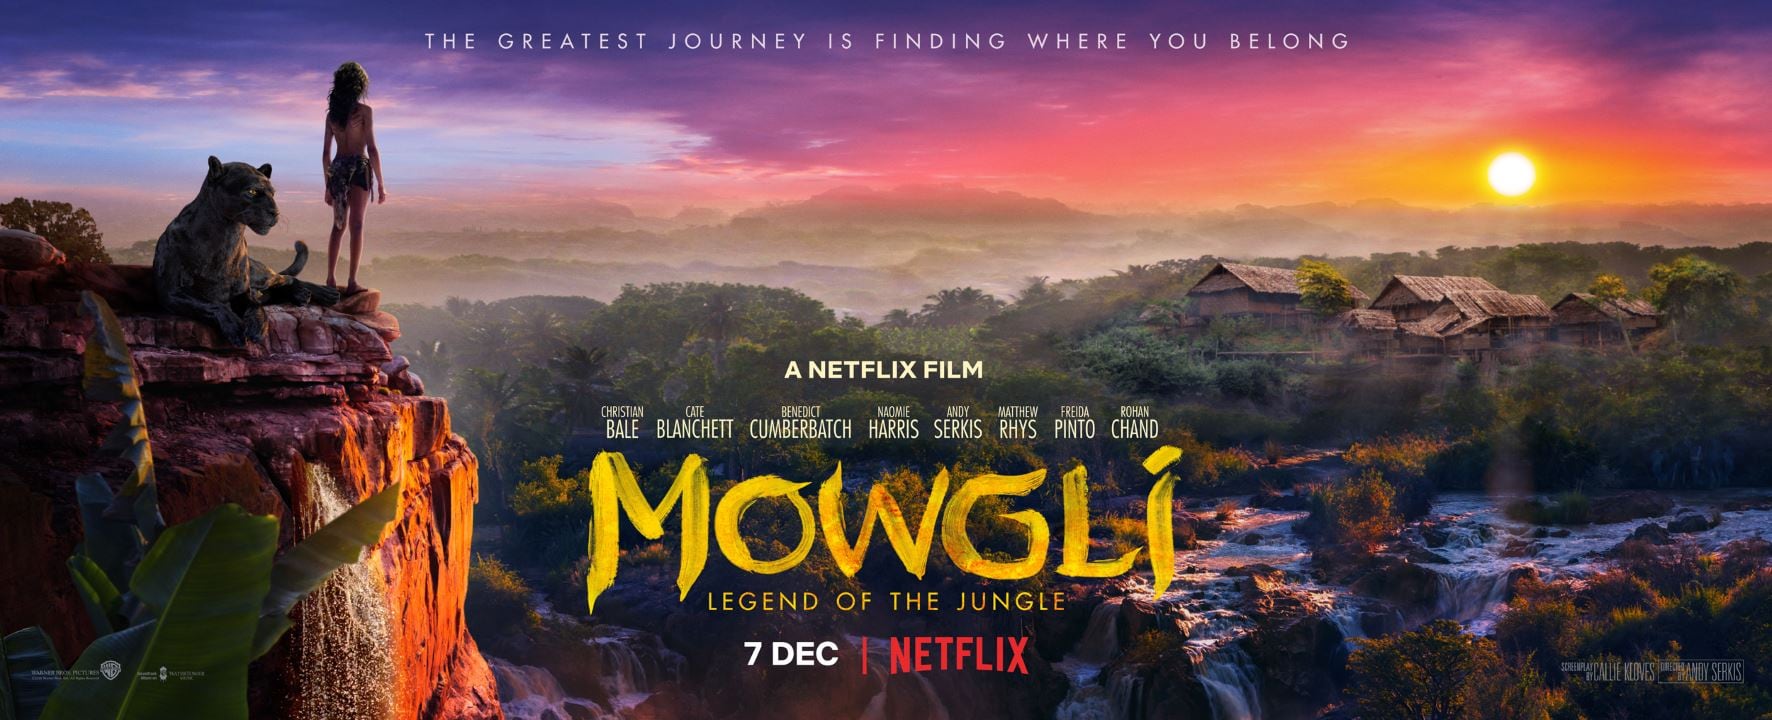 Mowgli: Legend of the Jungle / Mowgli: Legend of the Jungle (2018)